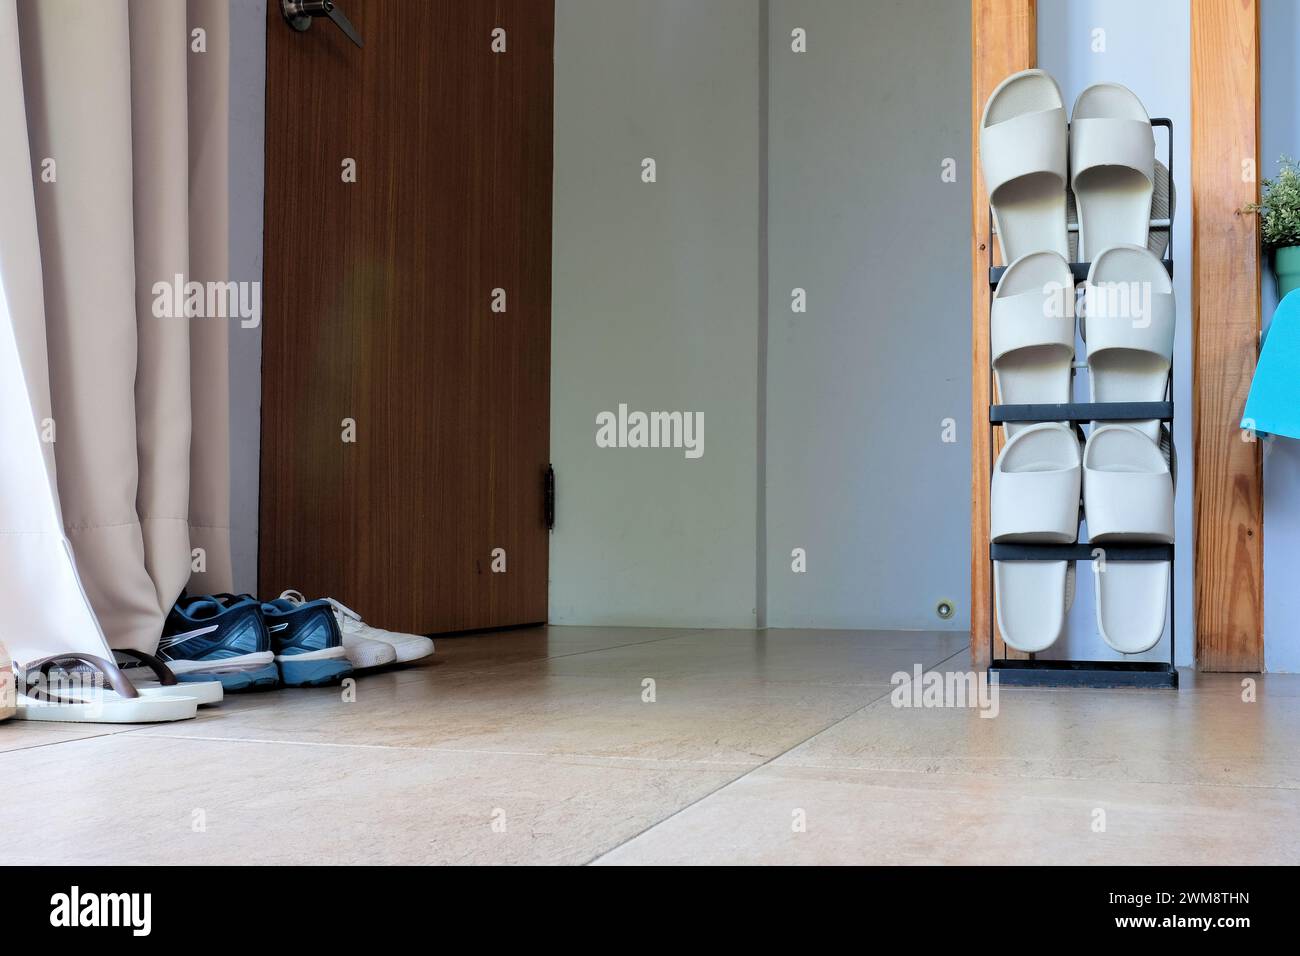 Vertikales Schuhregal mit drei Paar Gummisandalen für den Einsatz im Innenbereich neben Tür und Eingang mit Schuhen im Freien auf dem Boden; Asien, Taiwan. Stockfoto